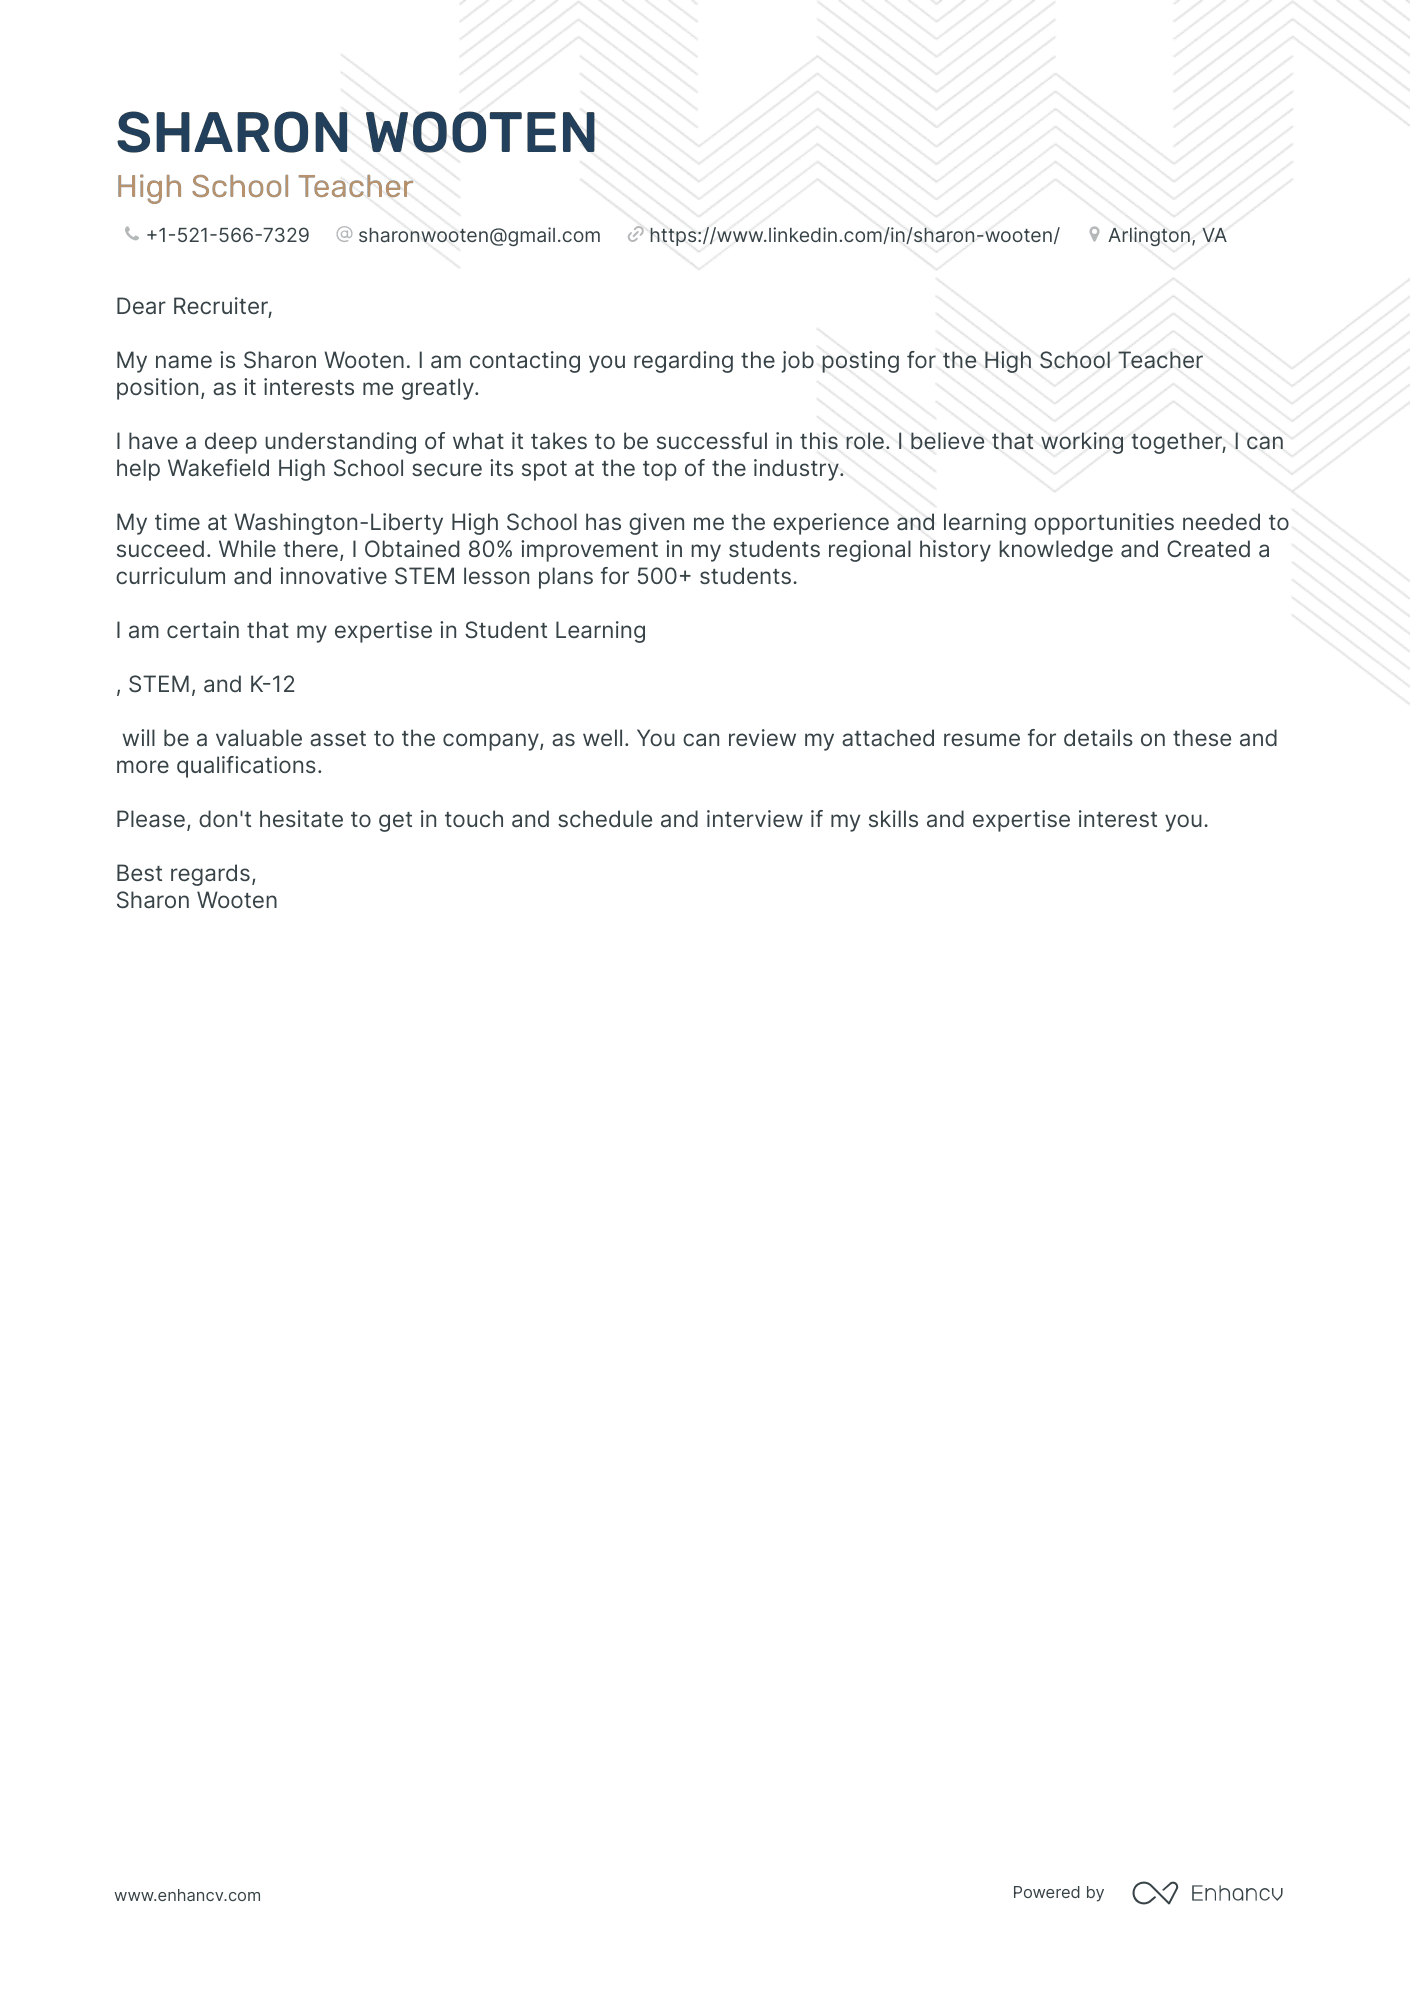 High School Teacher cover letter